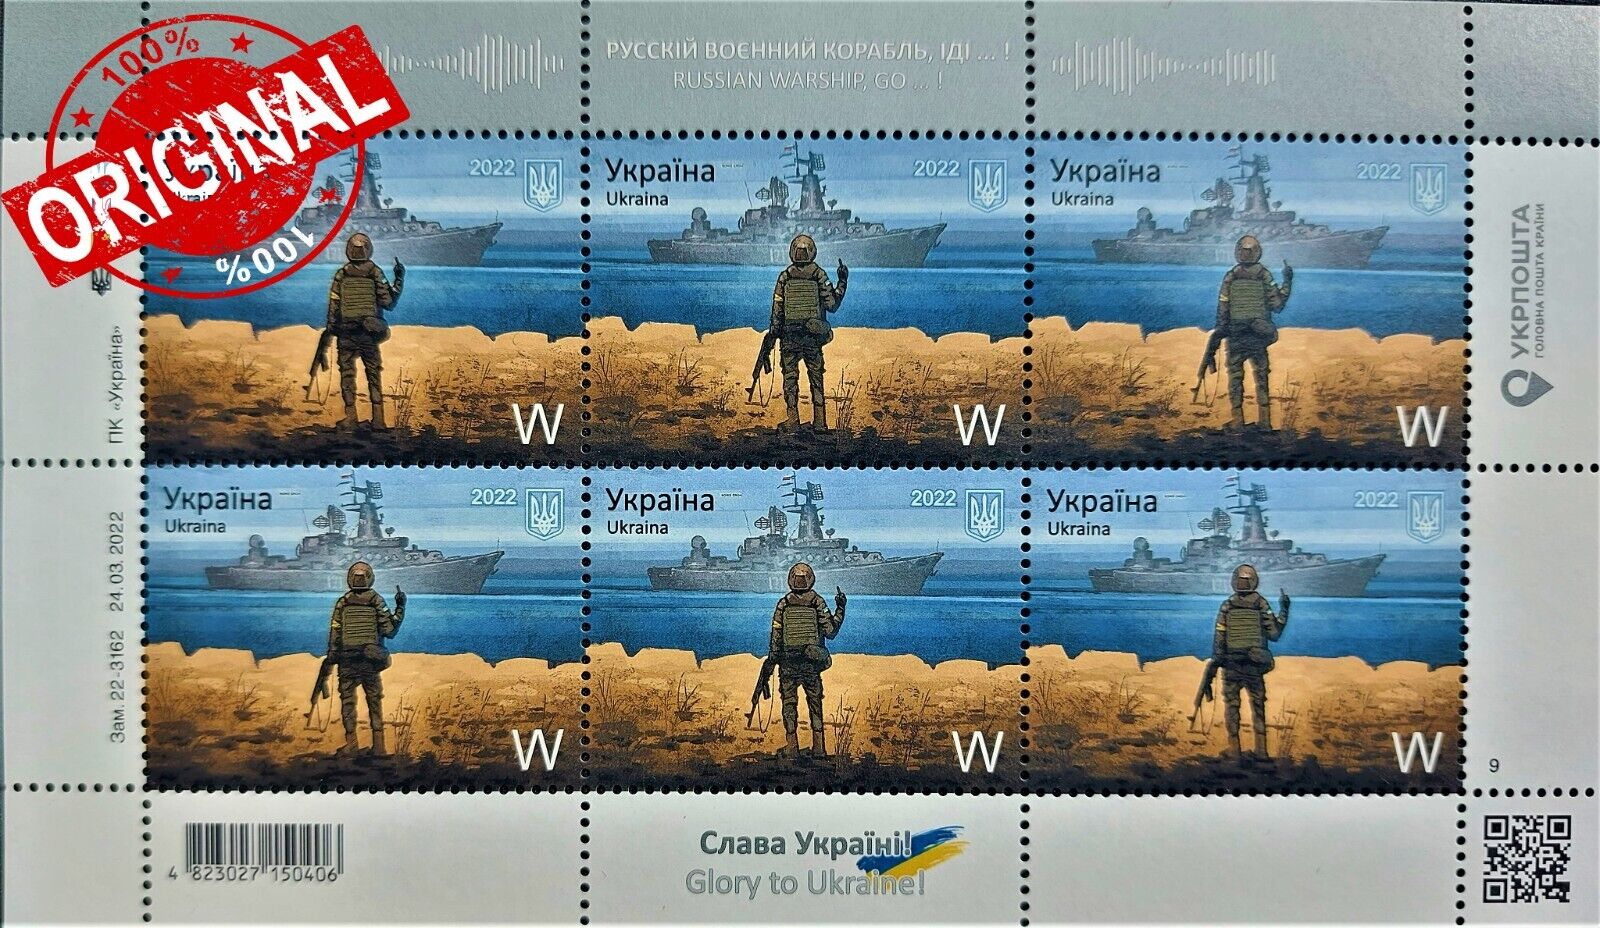 ORIGINAL. WAR IN UKRAINE. Postage Stamp "Russian warship go to ...!" 14.04.2022 Без бренда - фотография #2